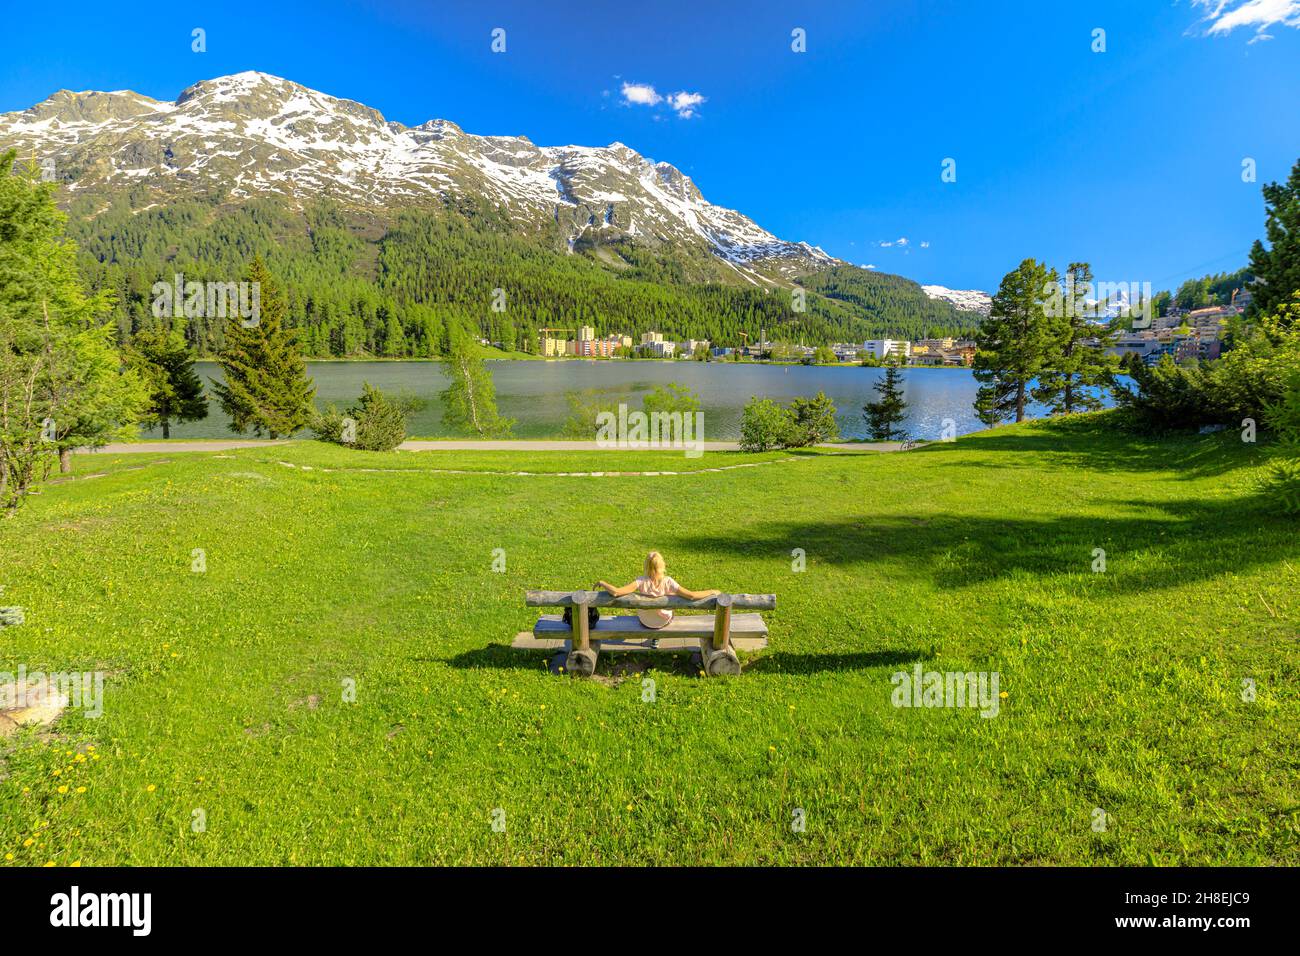 Voyageur femme assise sur un banc de parc de Saint-Moritz près du lac Saint-Moritz en Suisse.Le lac de Saint-Moritz dans le canton des Grisons, dans la région de Maloja. Banque D'Images